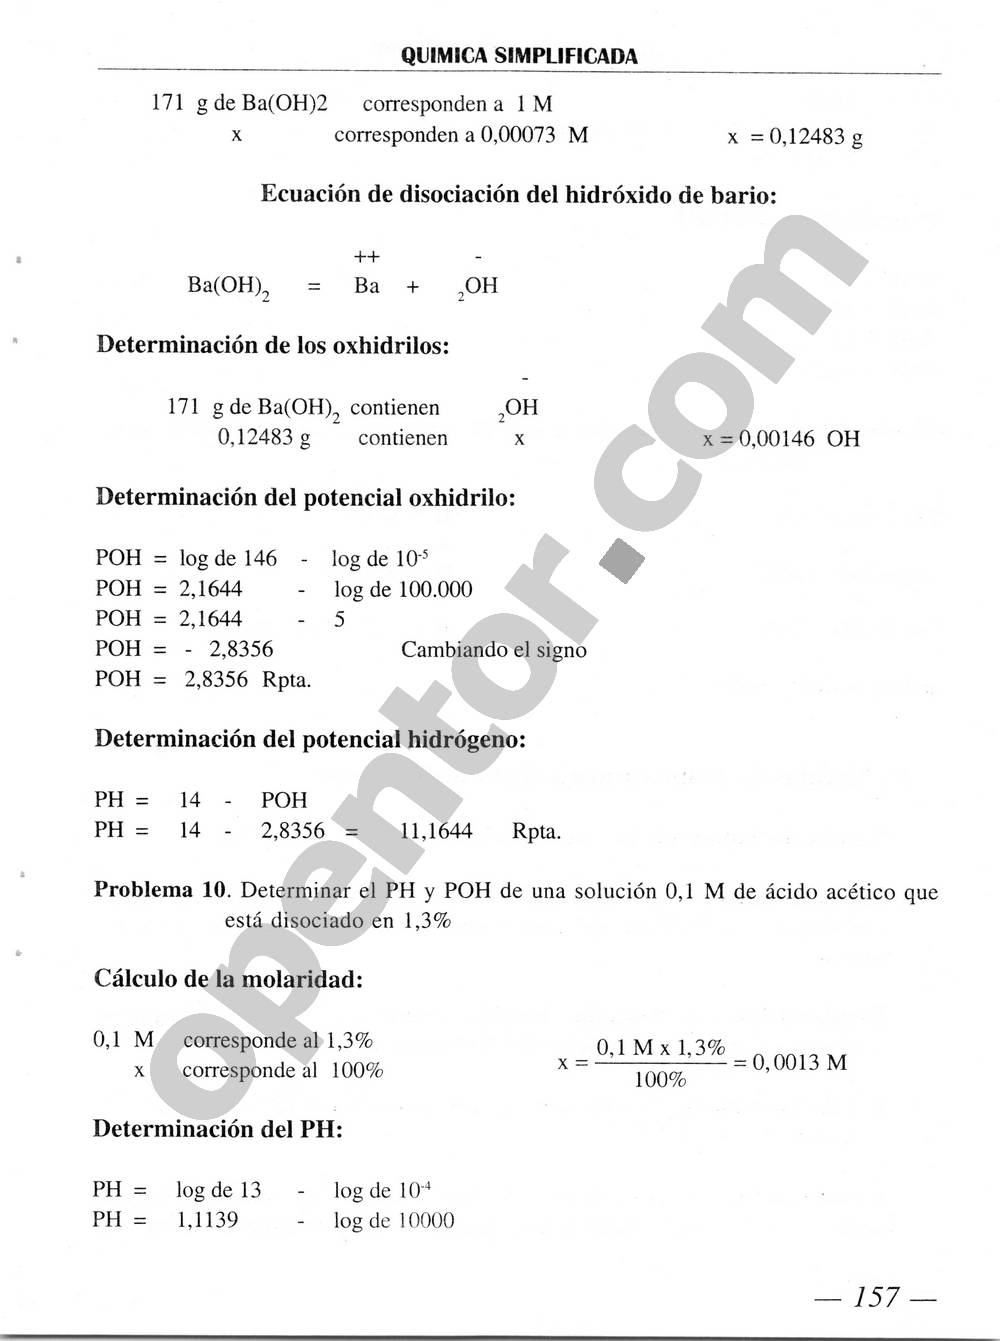 Química Simplificada de Diómedes Solano - Página 157